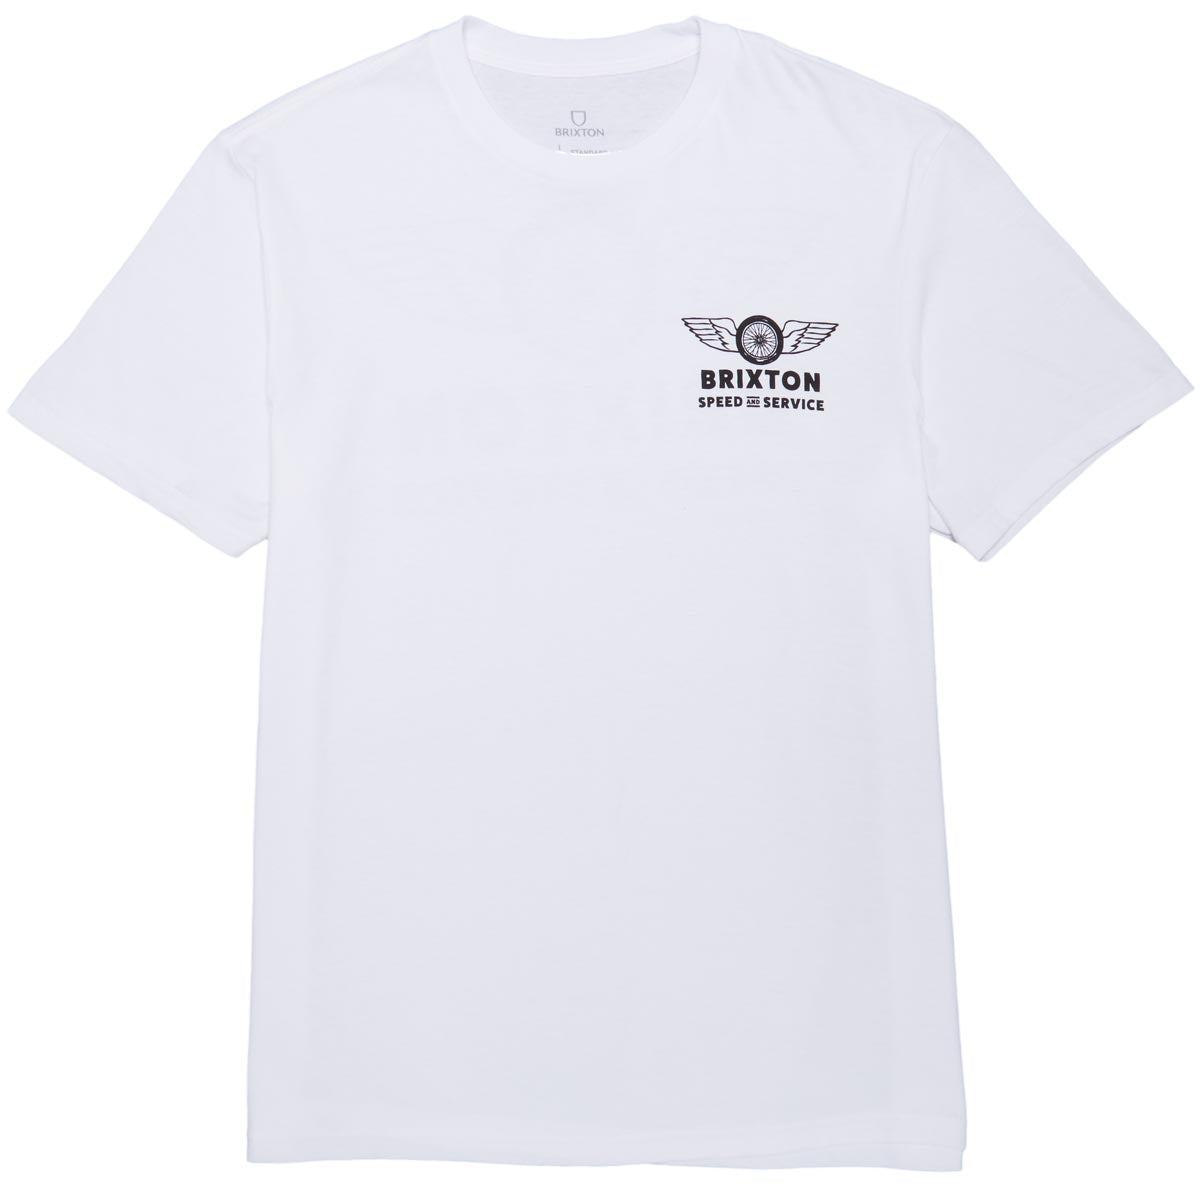 Brixton Spoke T-Shirt - White image 2